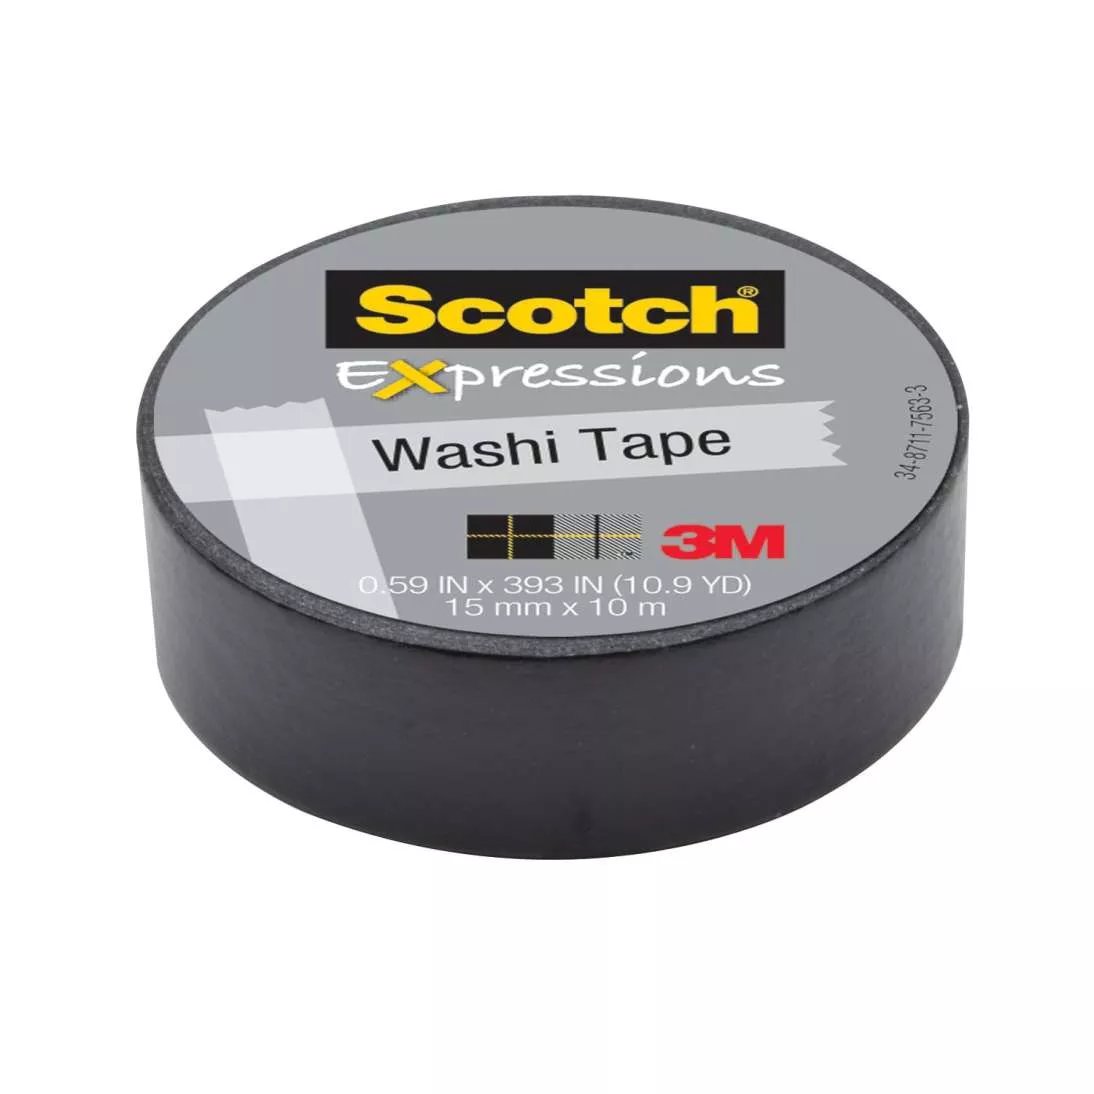 Scotch® Expressions Washi Tape C314-BLK, .59 in x 393 in (15 mm x 10 m)
Black